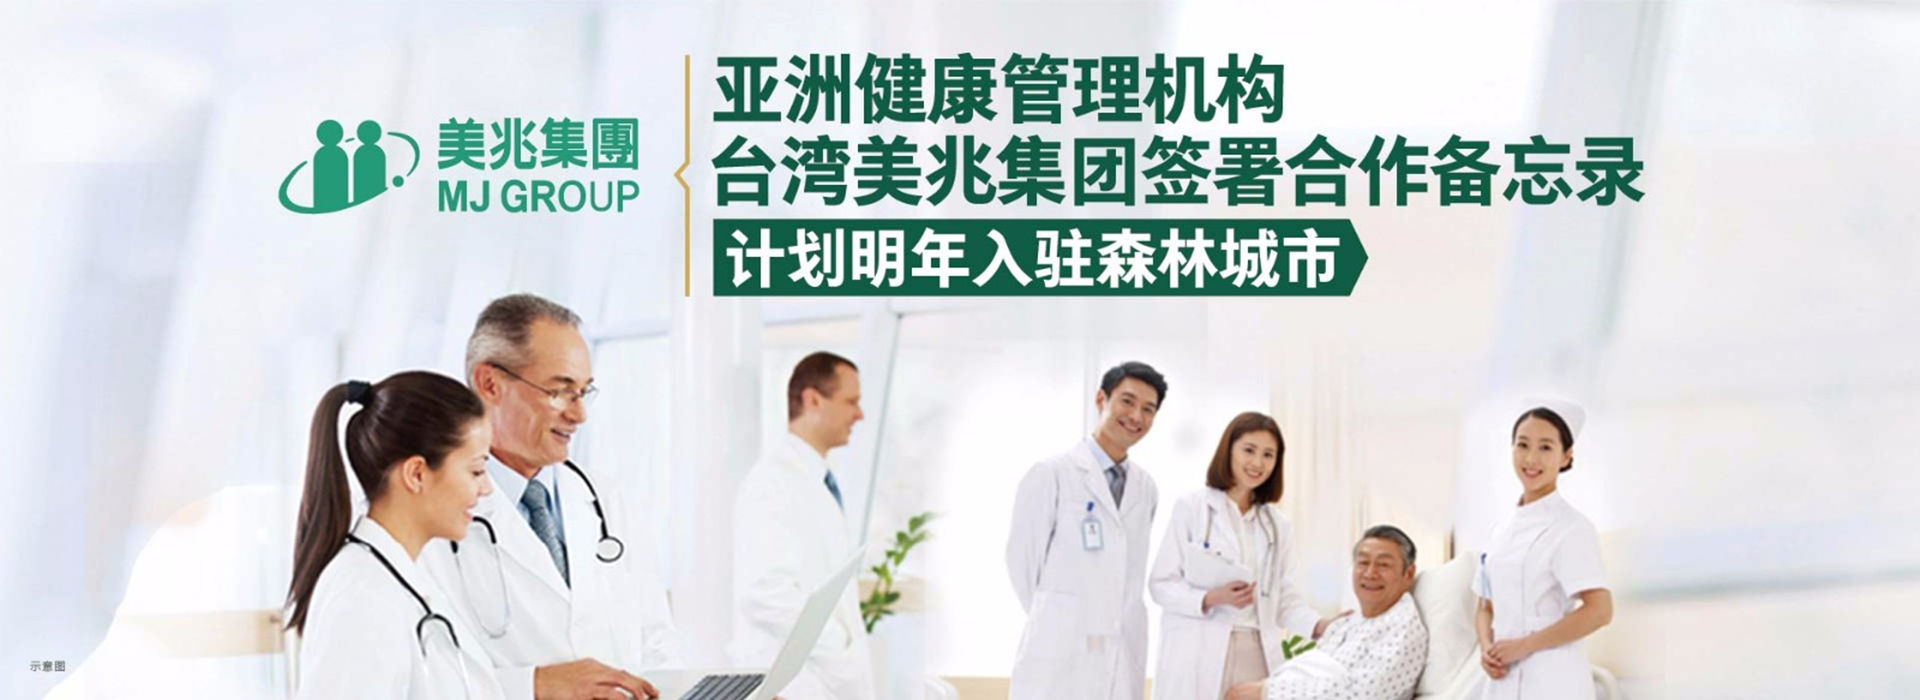 亚洲健康管理机构——台湾美兆集团计划入驻碧桂园森林城市